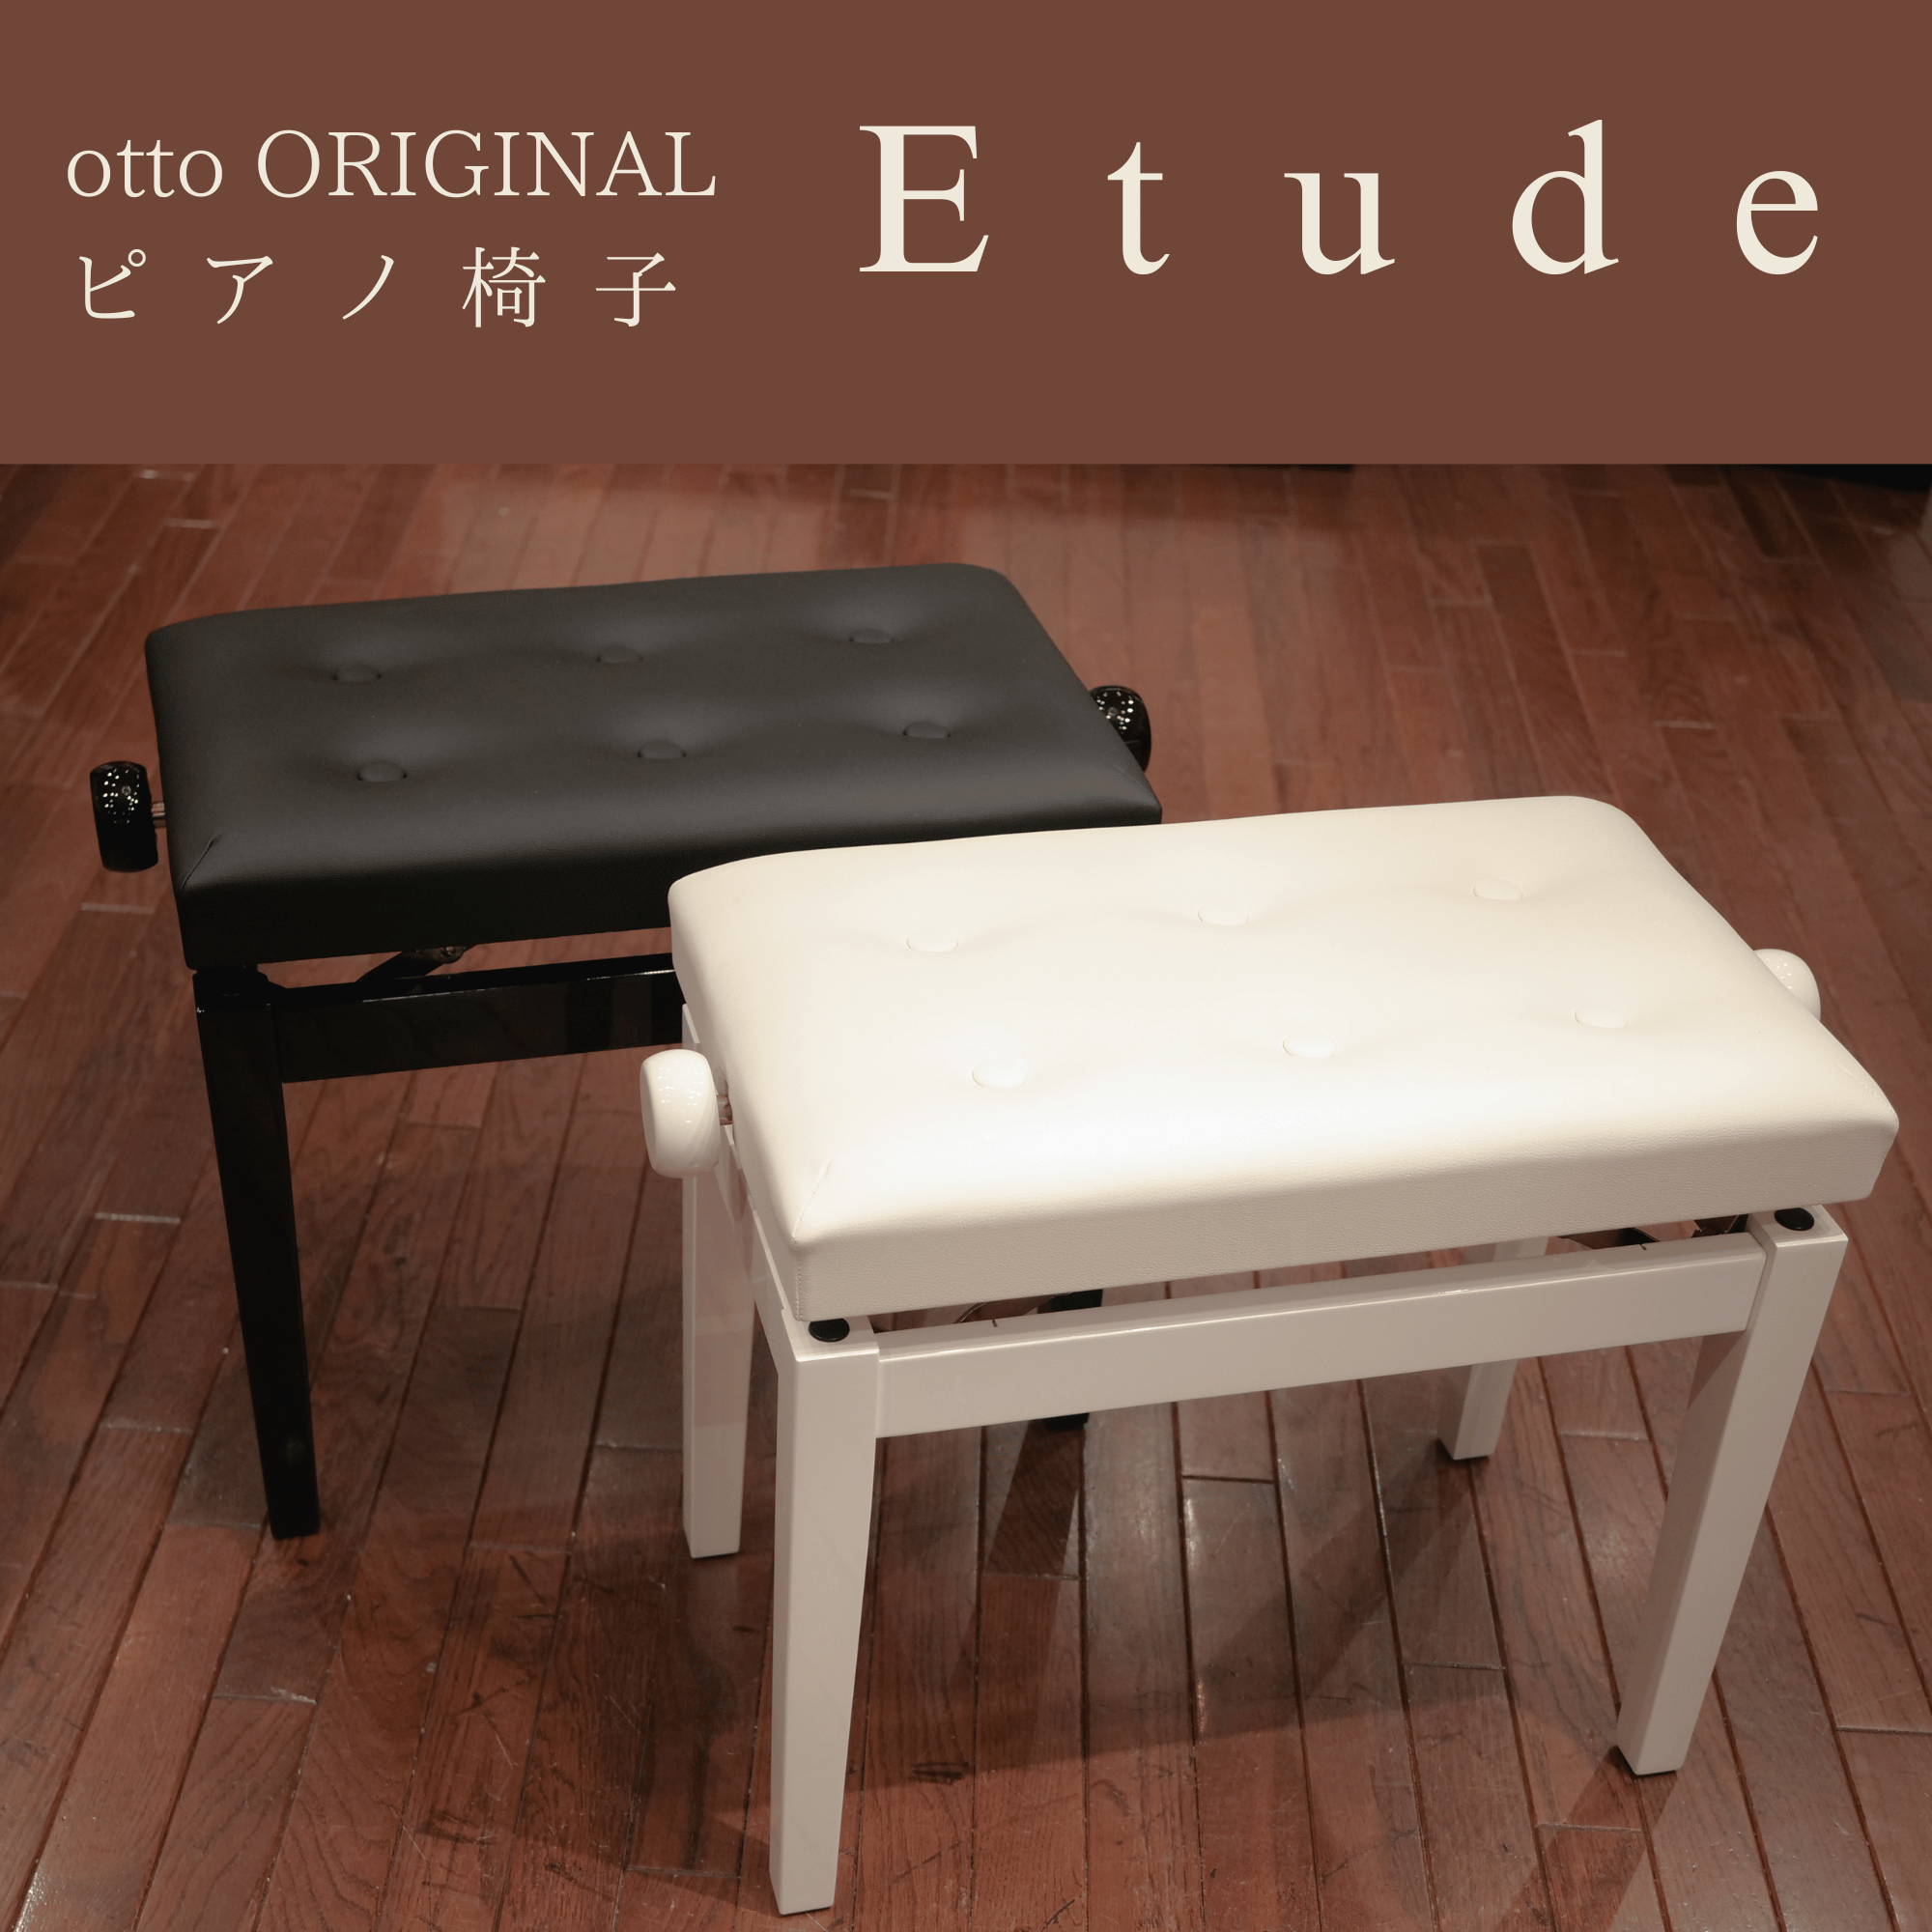 商品詳細 ： otto/ピアノ・鍵盤椅子/Etude エチュード（ブラック／ホワイト）